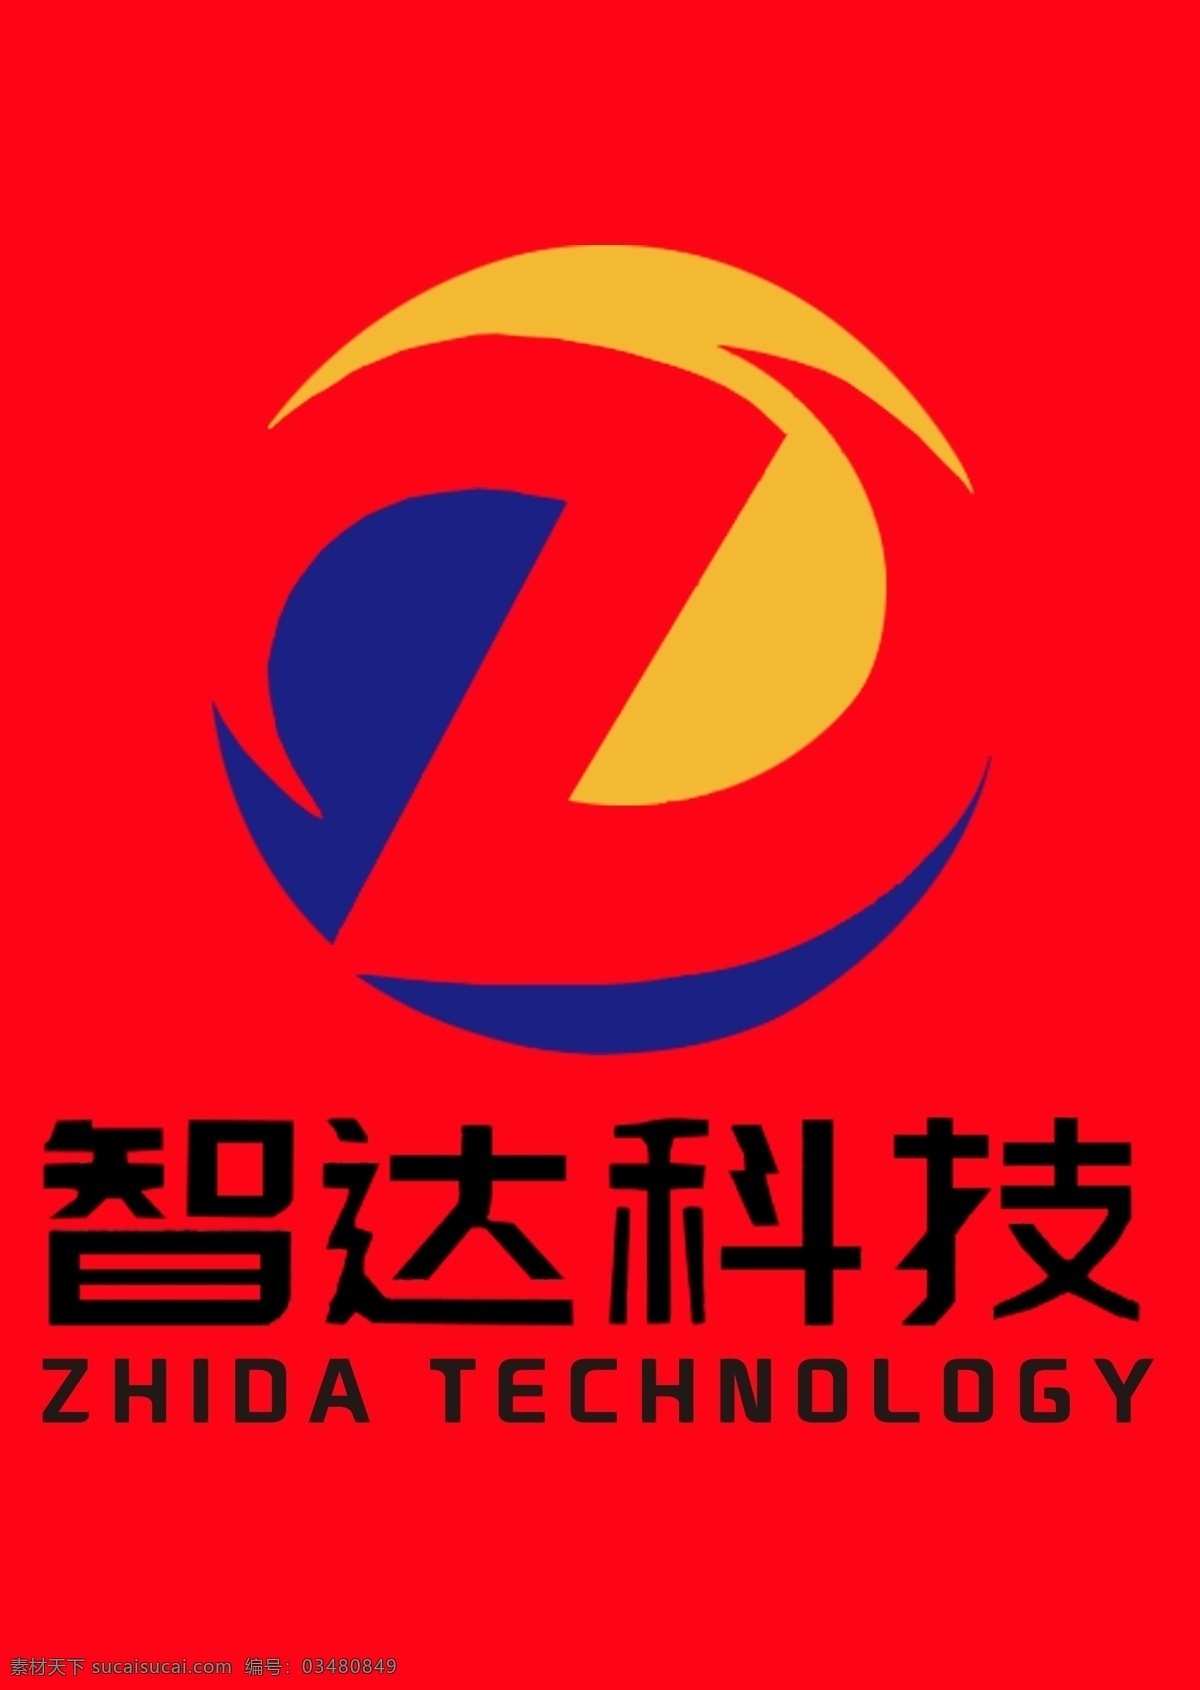 logo 标志 智达 科技公司 公司标志 标志图形 3d设计 3d作品